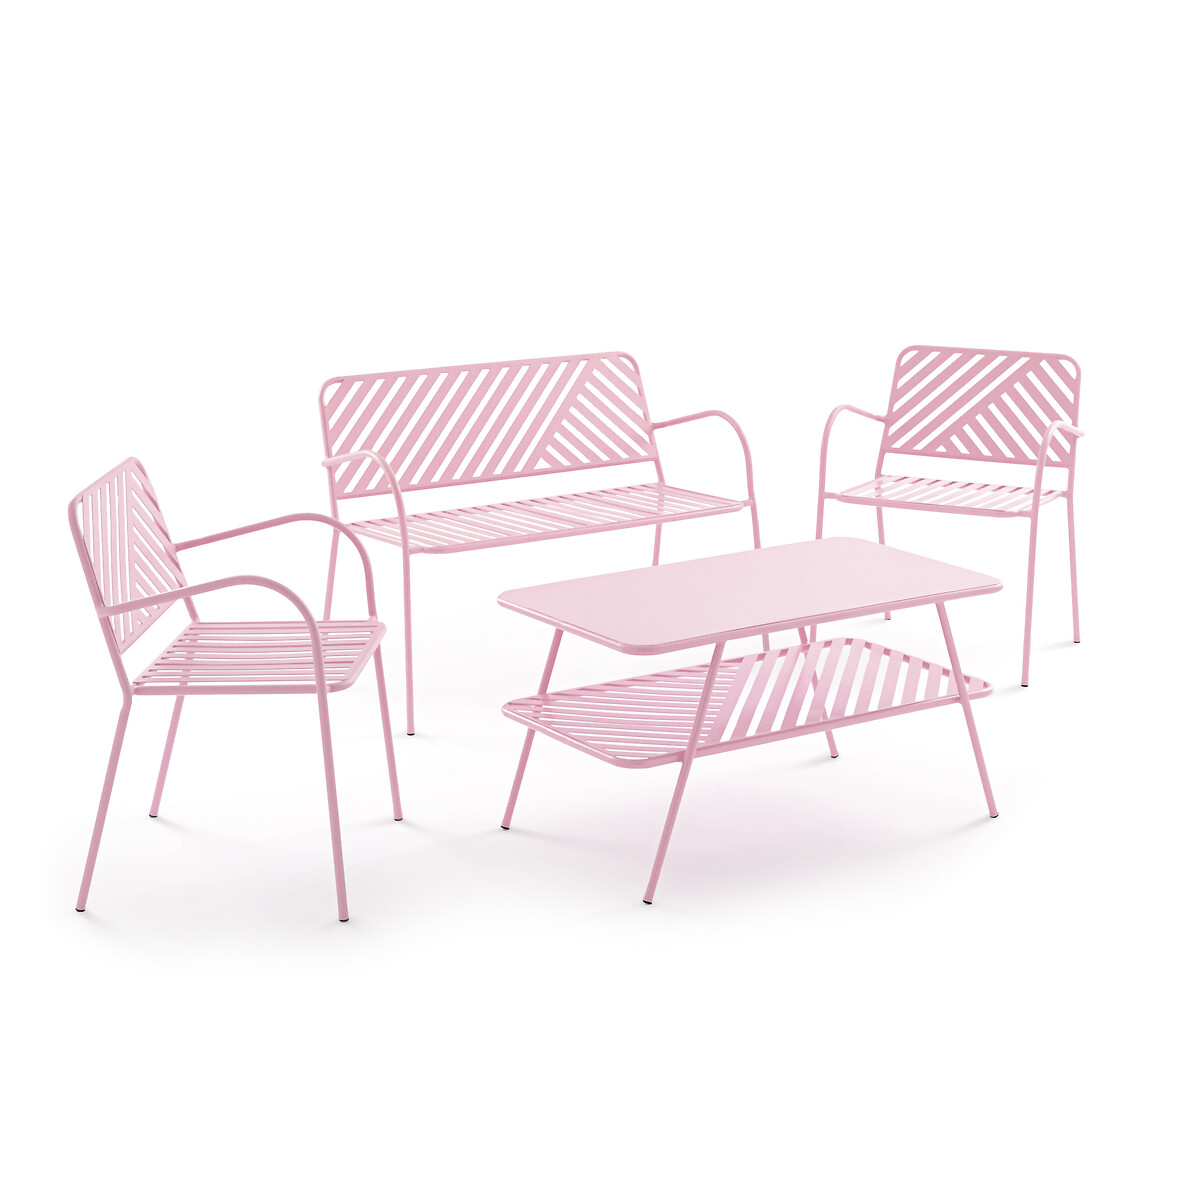 Стол Журнальный с двумя столешницами из стали единый размер розовый LaRedoute - фото 5